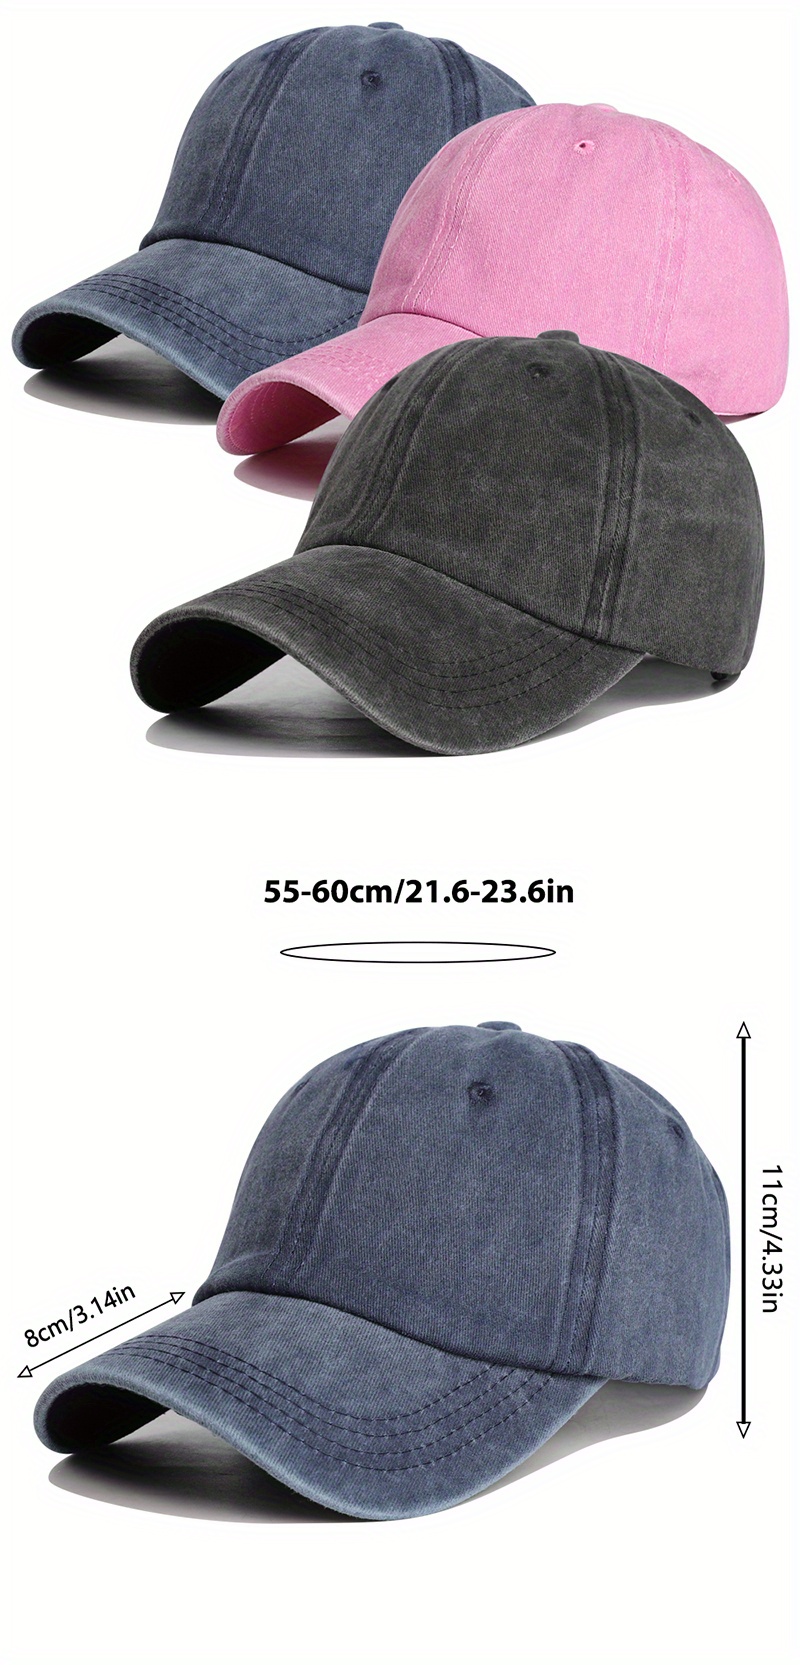 Mchoice hats for women fashionable Men sun hats Baseball Cap